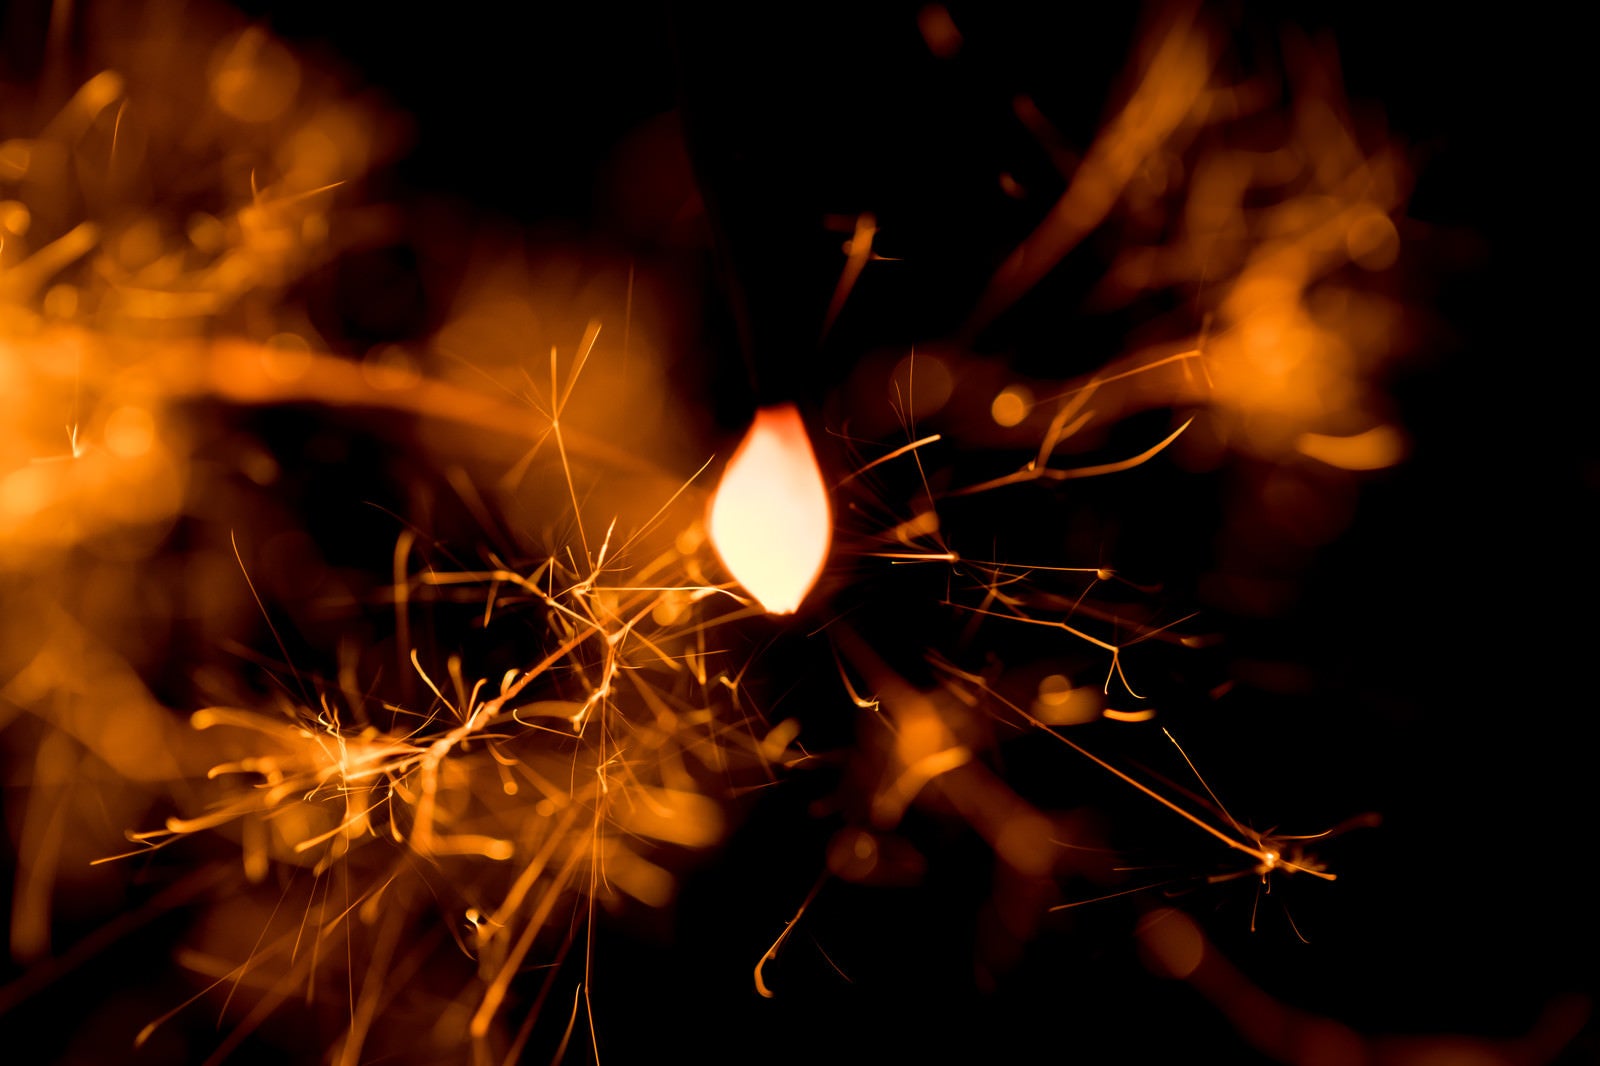 「線香花火の火花を接写」の写真